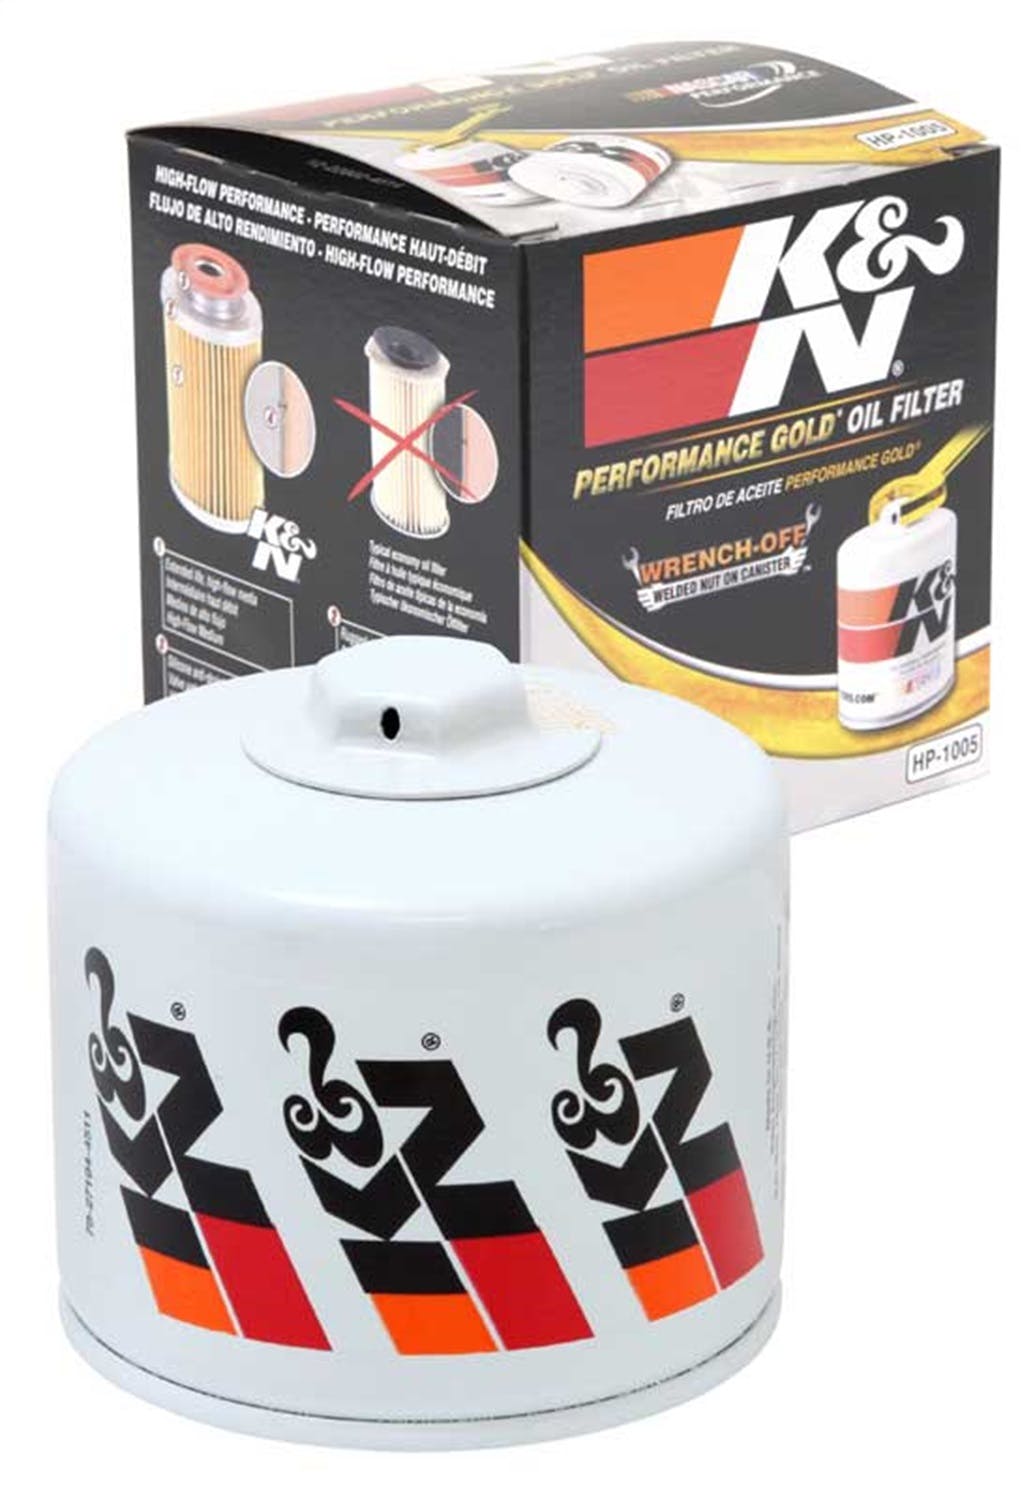 K&N HP-1005 Oil Filter